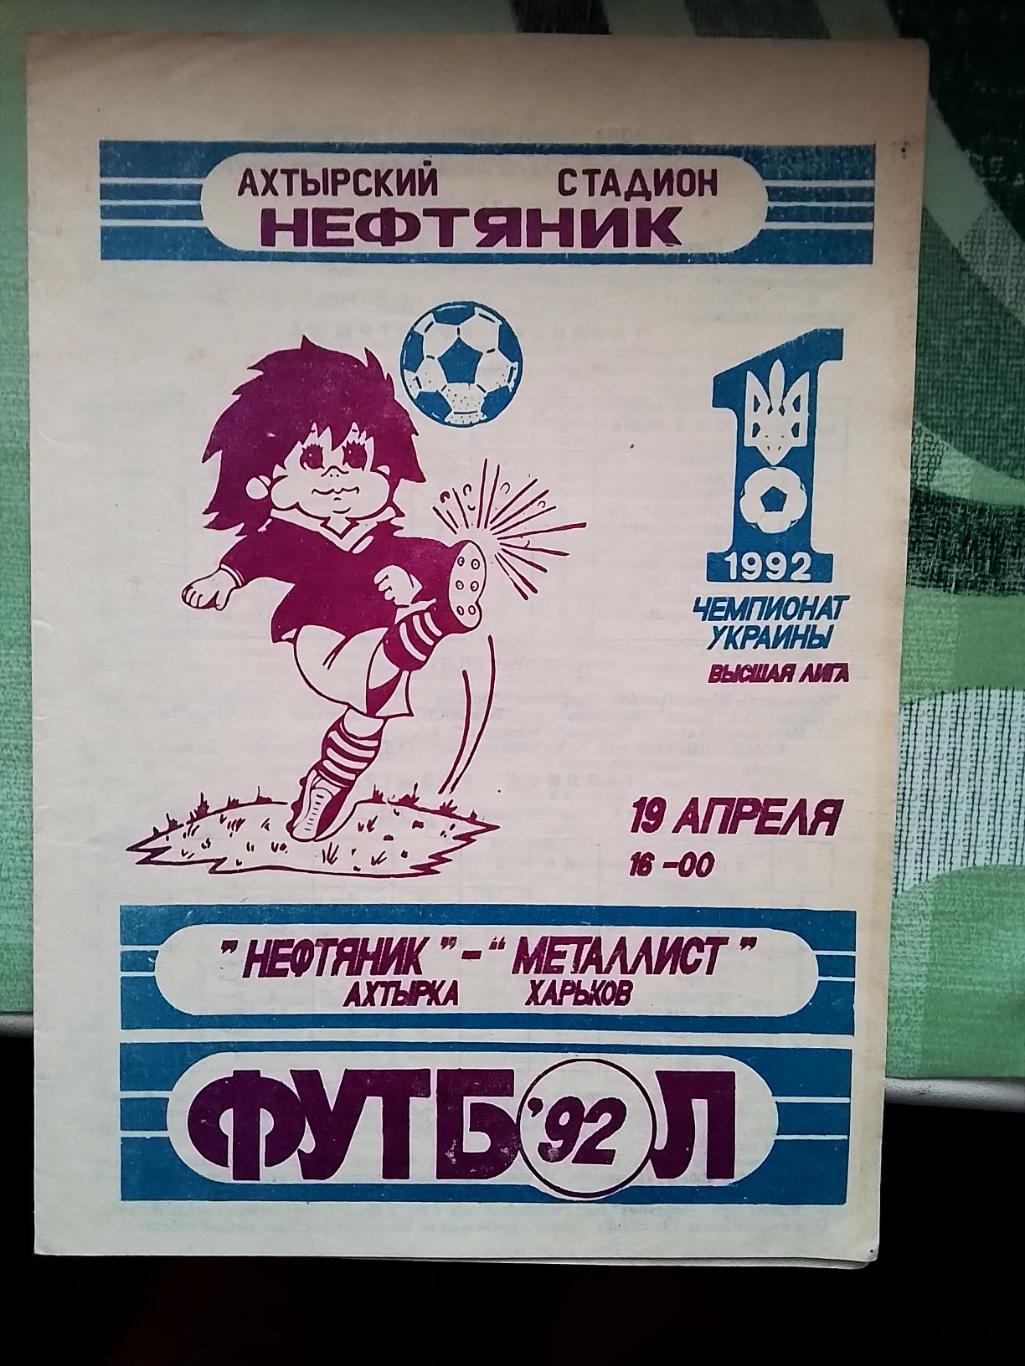 Нефтяник Ахтырка - Металлист Харьков 1992